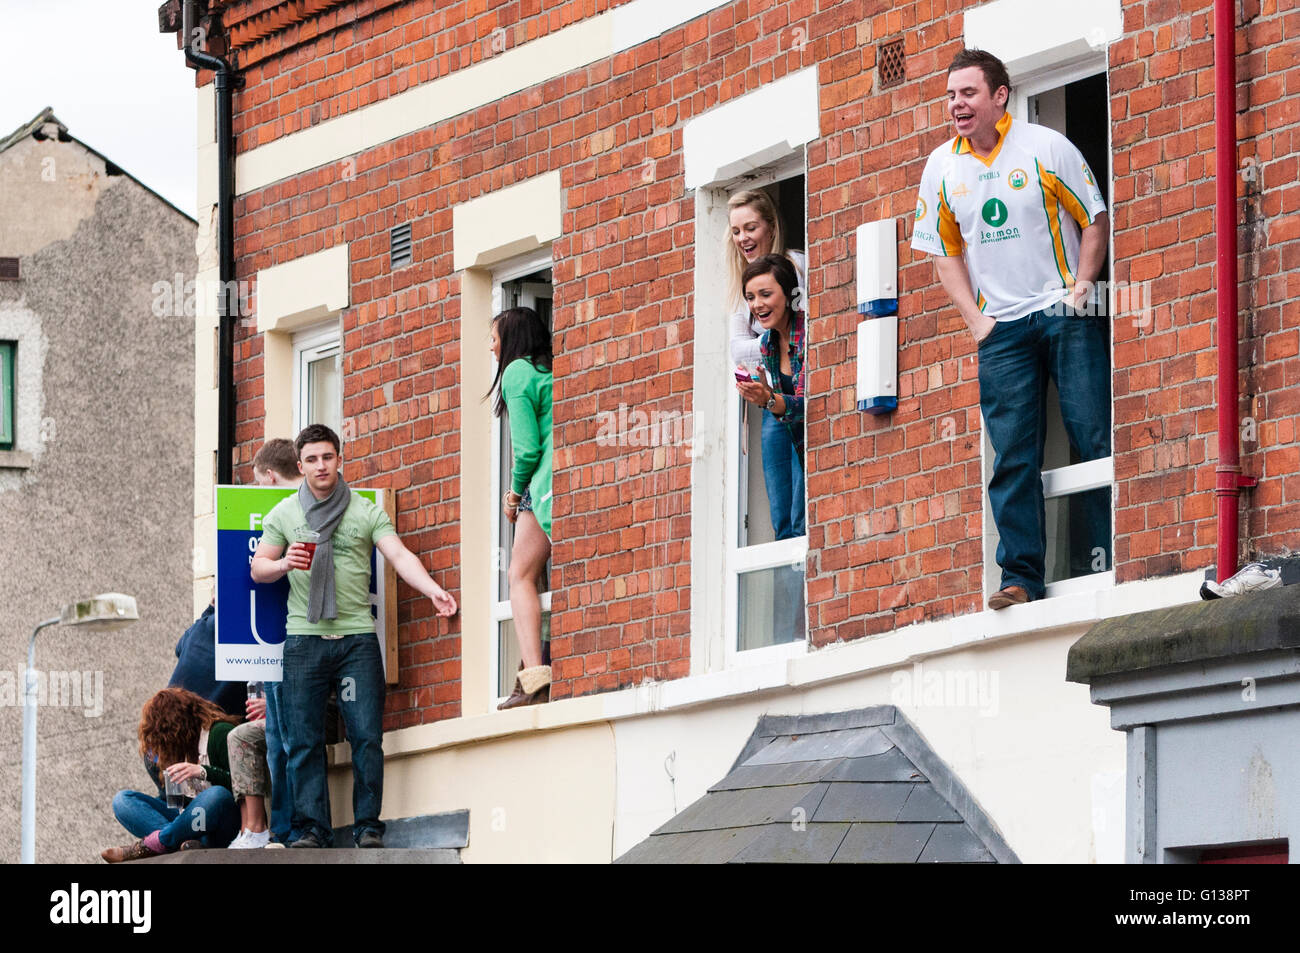 Belfast, Irlande du Nord. 17 mars 2011 - Les élèves célèbrent le Jour de la Saint Patrick par escalade de fenêtres et baie vitrée sur les toits des maisons louées dans les lieux saints de Belfast. Banque D'Images